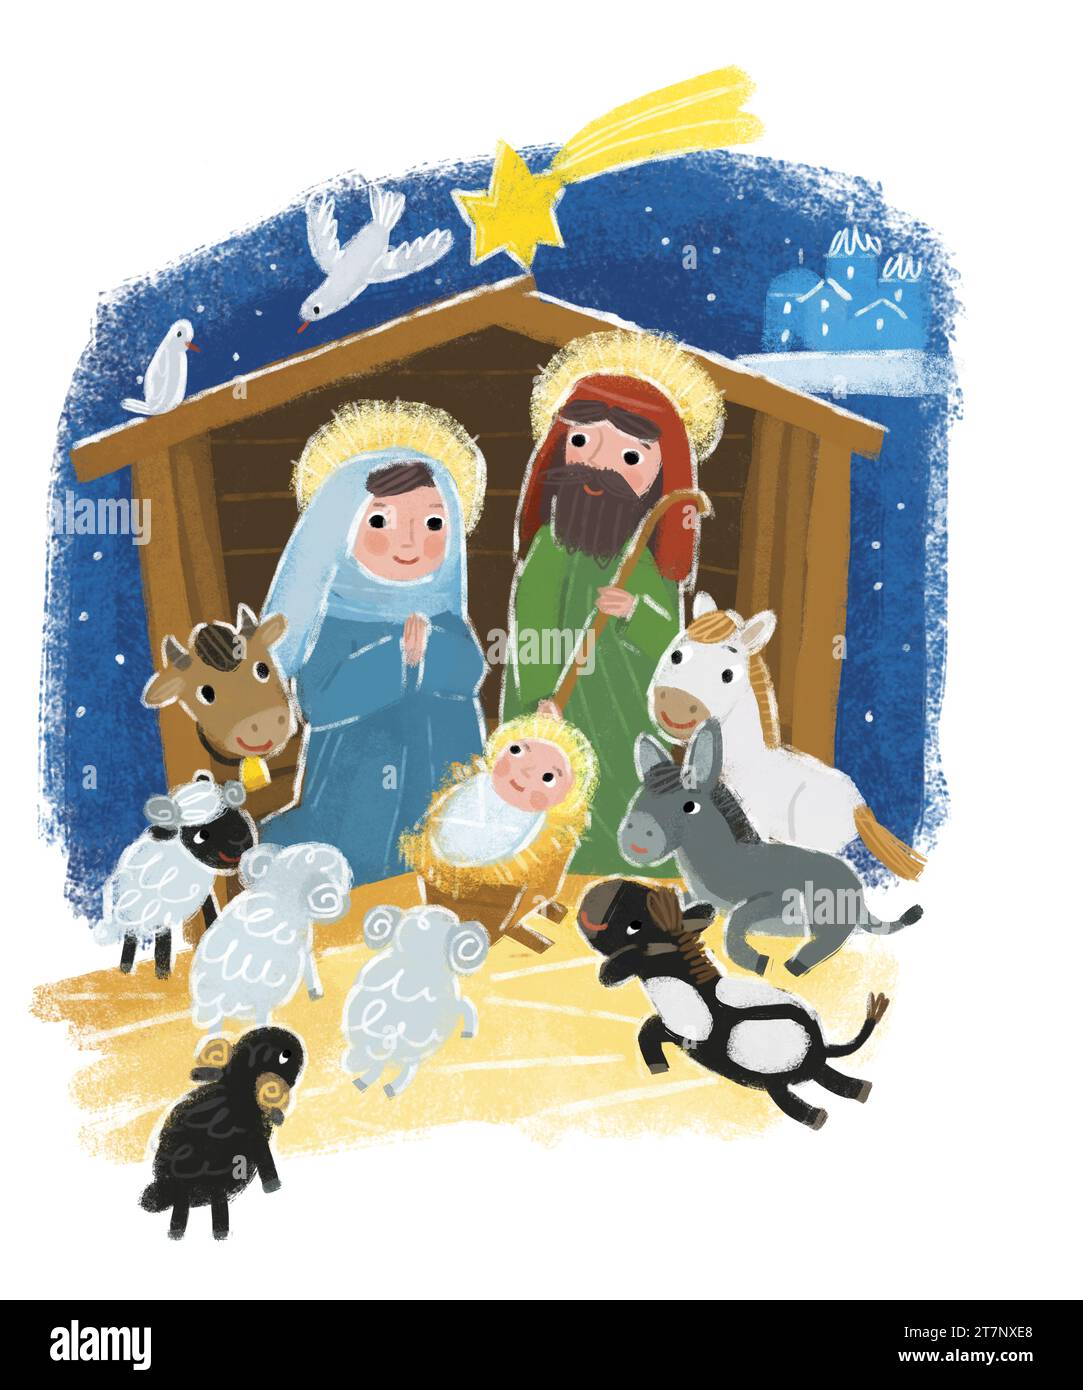 illustration de dessin animé de la sainte famille josef mary illustration de scène traditionnelle pour les enfants Banque D'Images